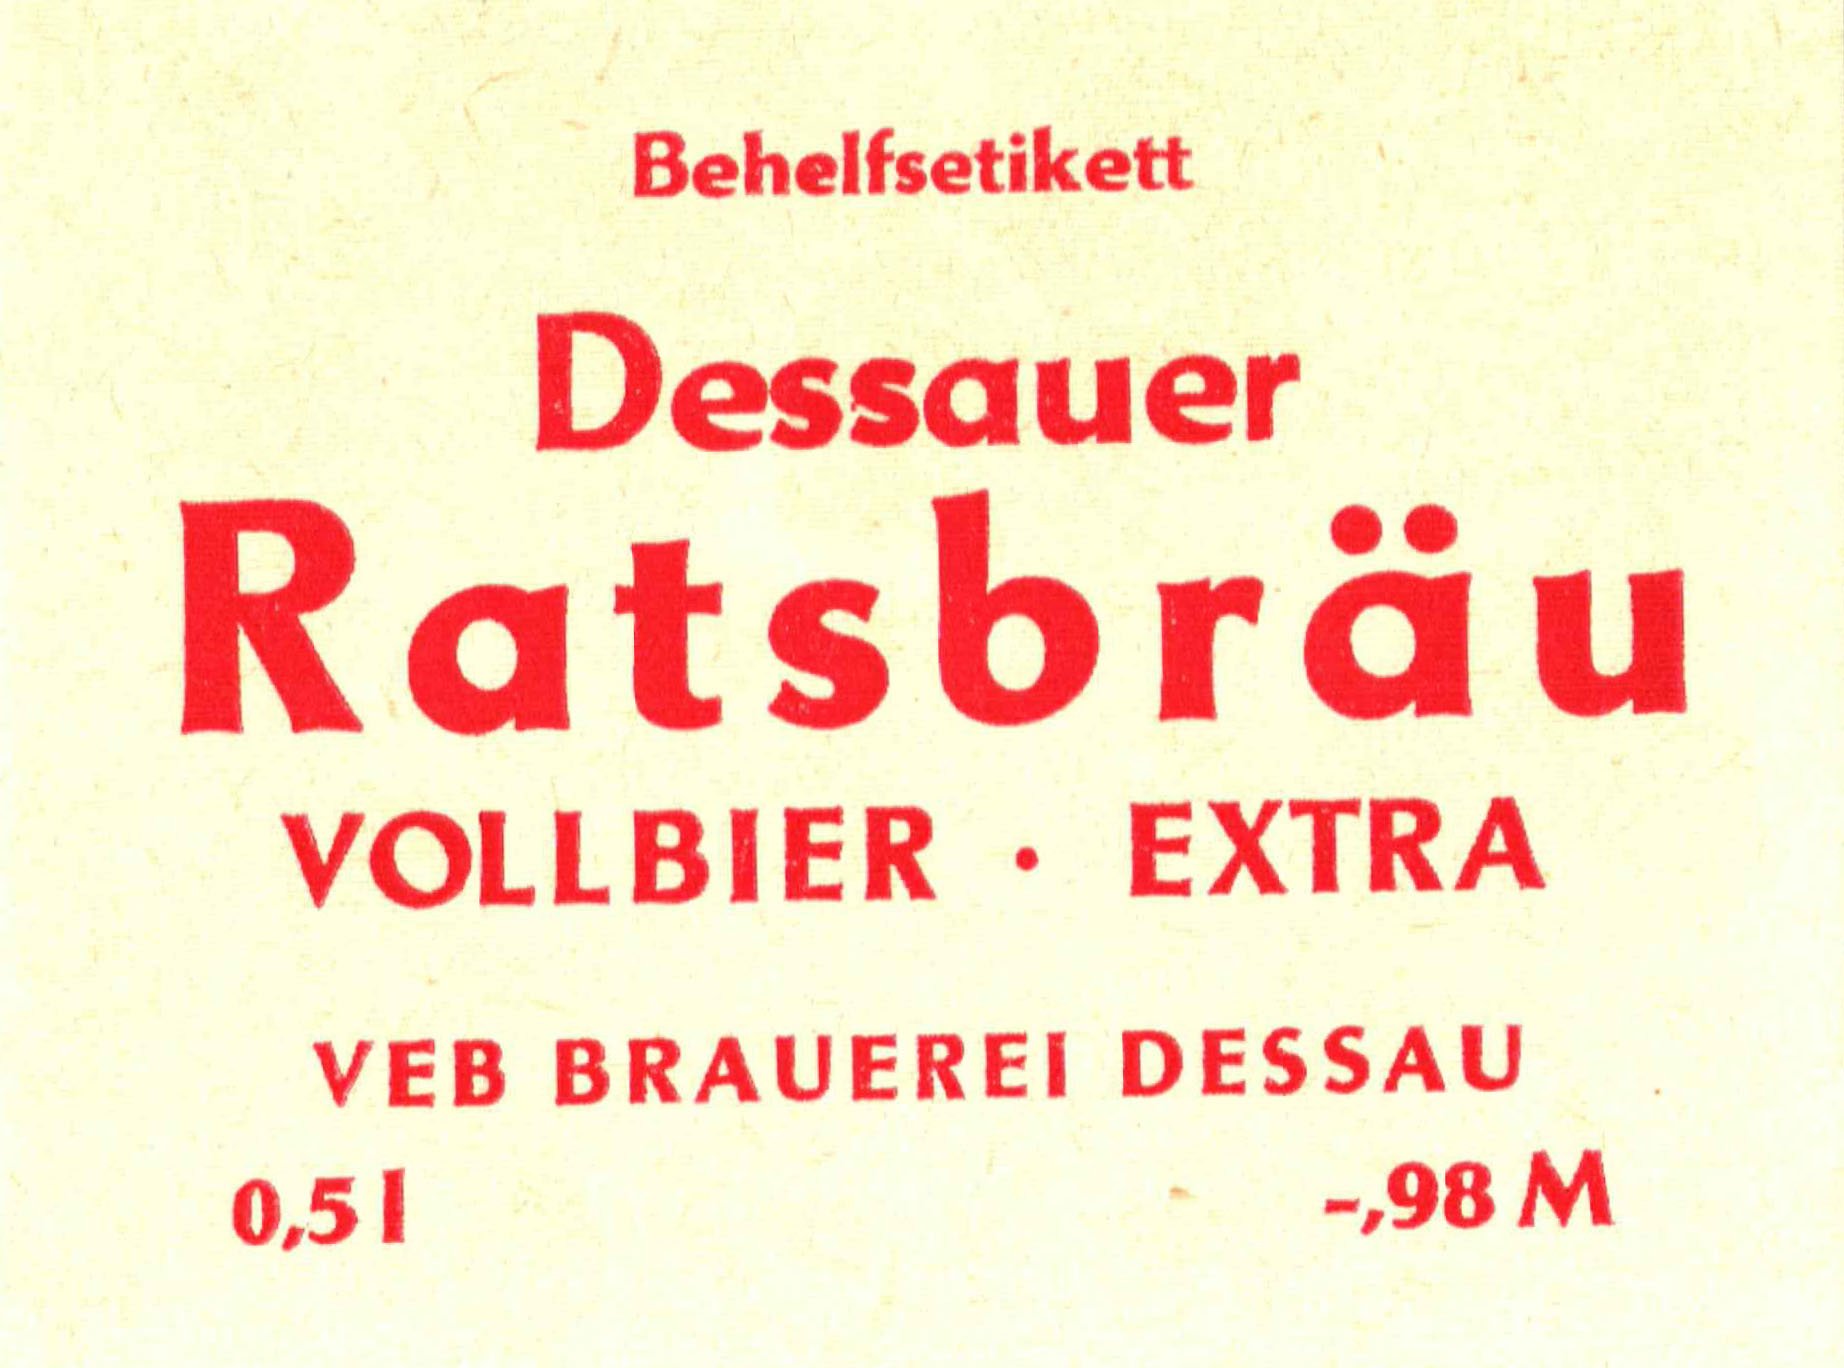 Behelfsetikett der VEB Brauerei Dessau, um 1969 (ARCHIV DEUTSCHER BIERETIKETTEN CC BY-NC-SA)